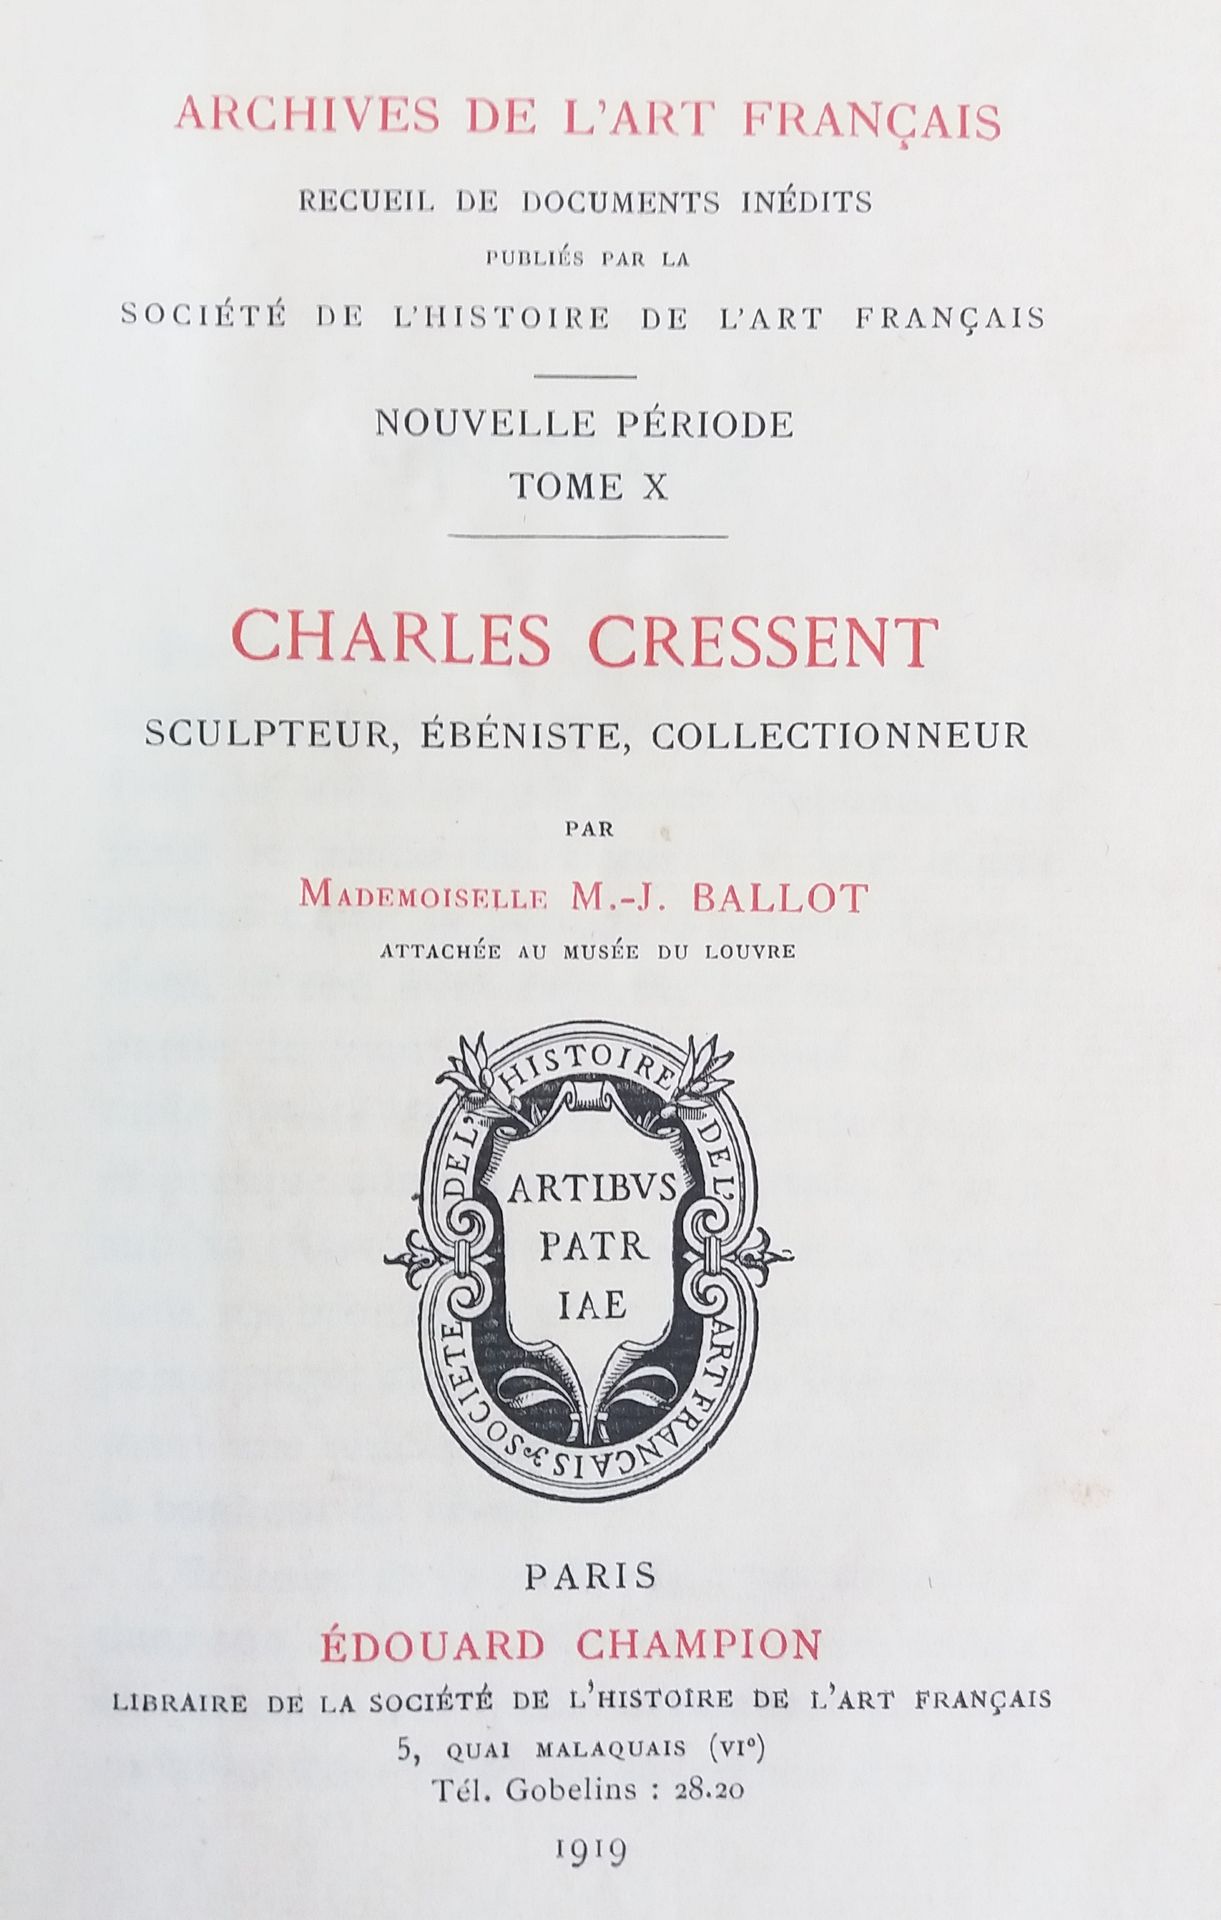 Null [MOBILIER]
1 ouvrage sur Charles Cressent, sculpteur et ébéniste.

*Charles&hellip;